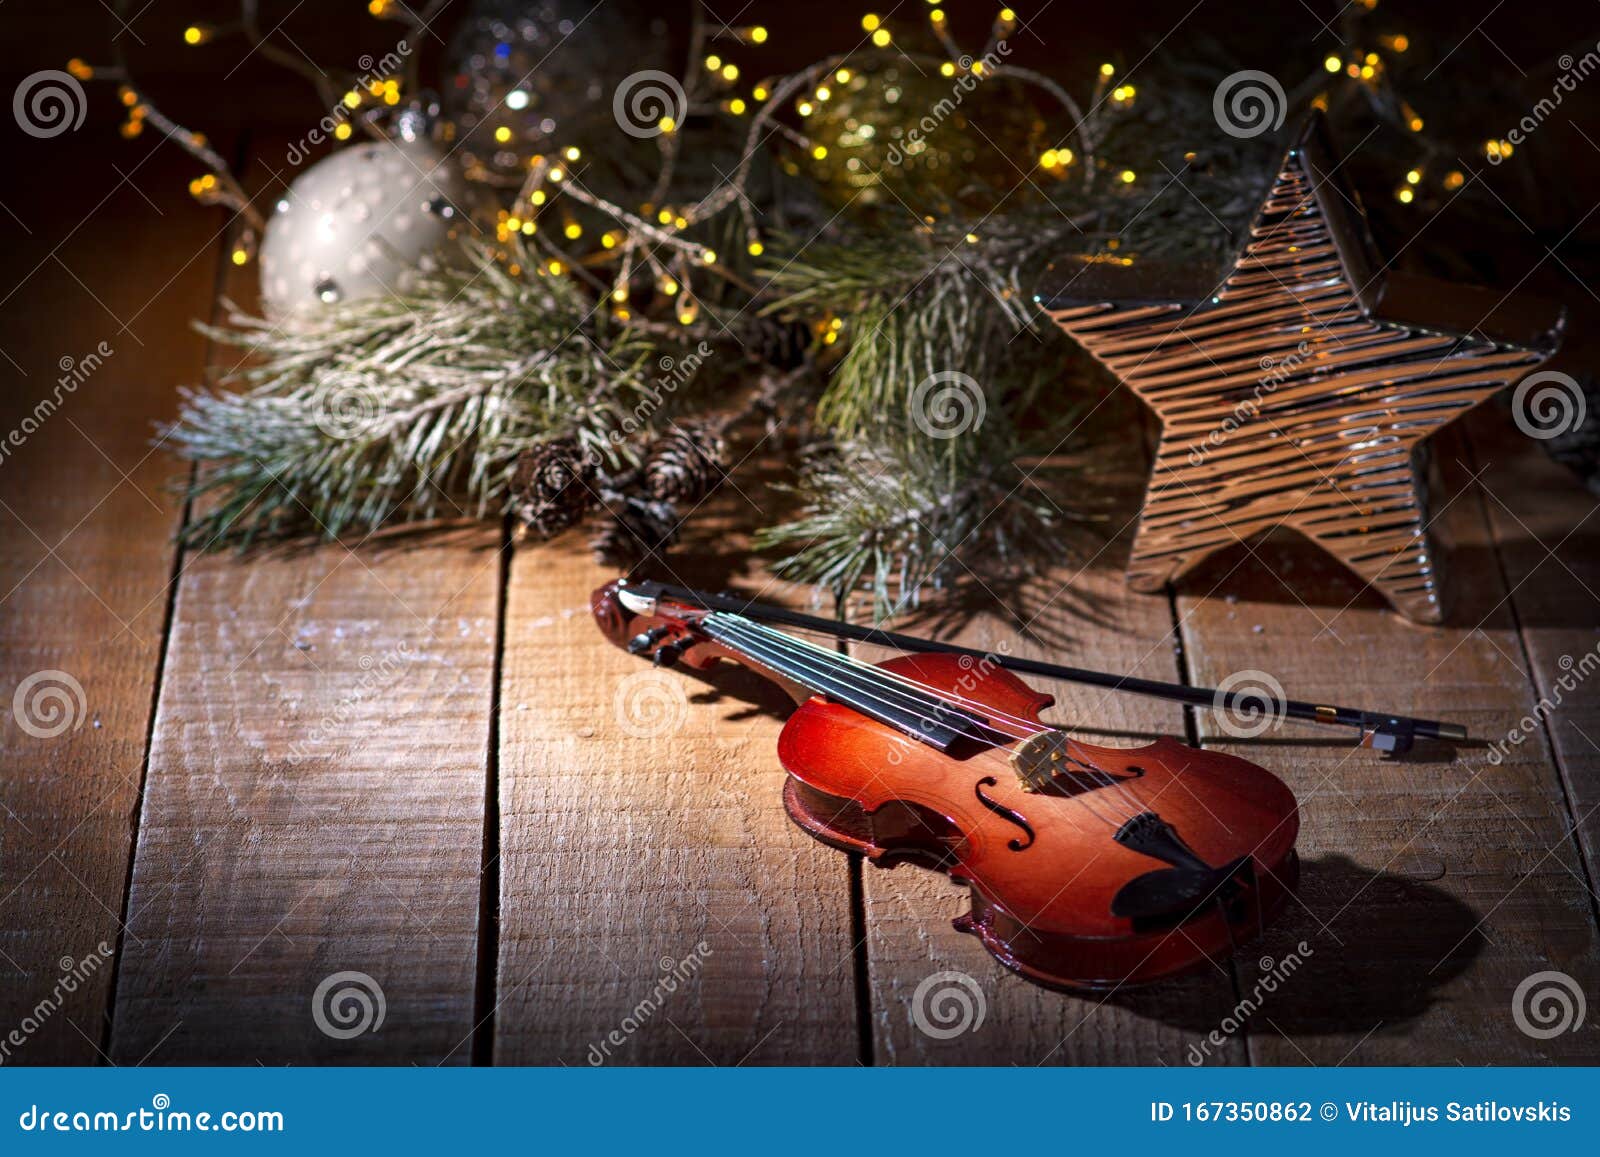 Cây thông Giáng Sinh được trang trí bằng đàn violin quý giá, tạo nên một không gian thật lung linh và rực rỡ cho mùa lễ hội này. Hãy cùng xem hình ảnh và chiêm ngưỡng sự kết hợp độc đáo này.